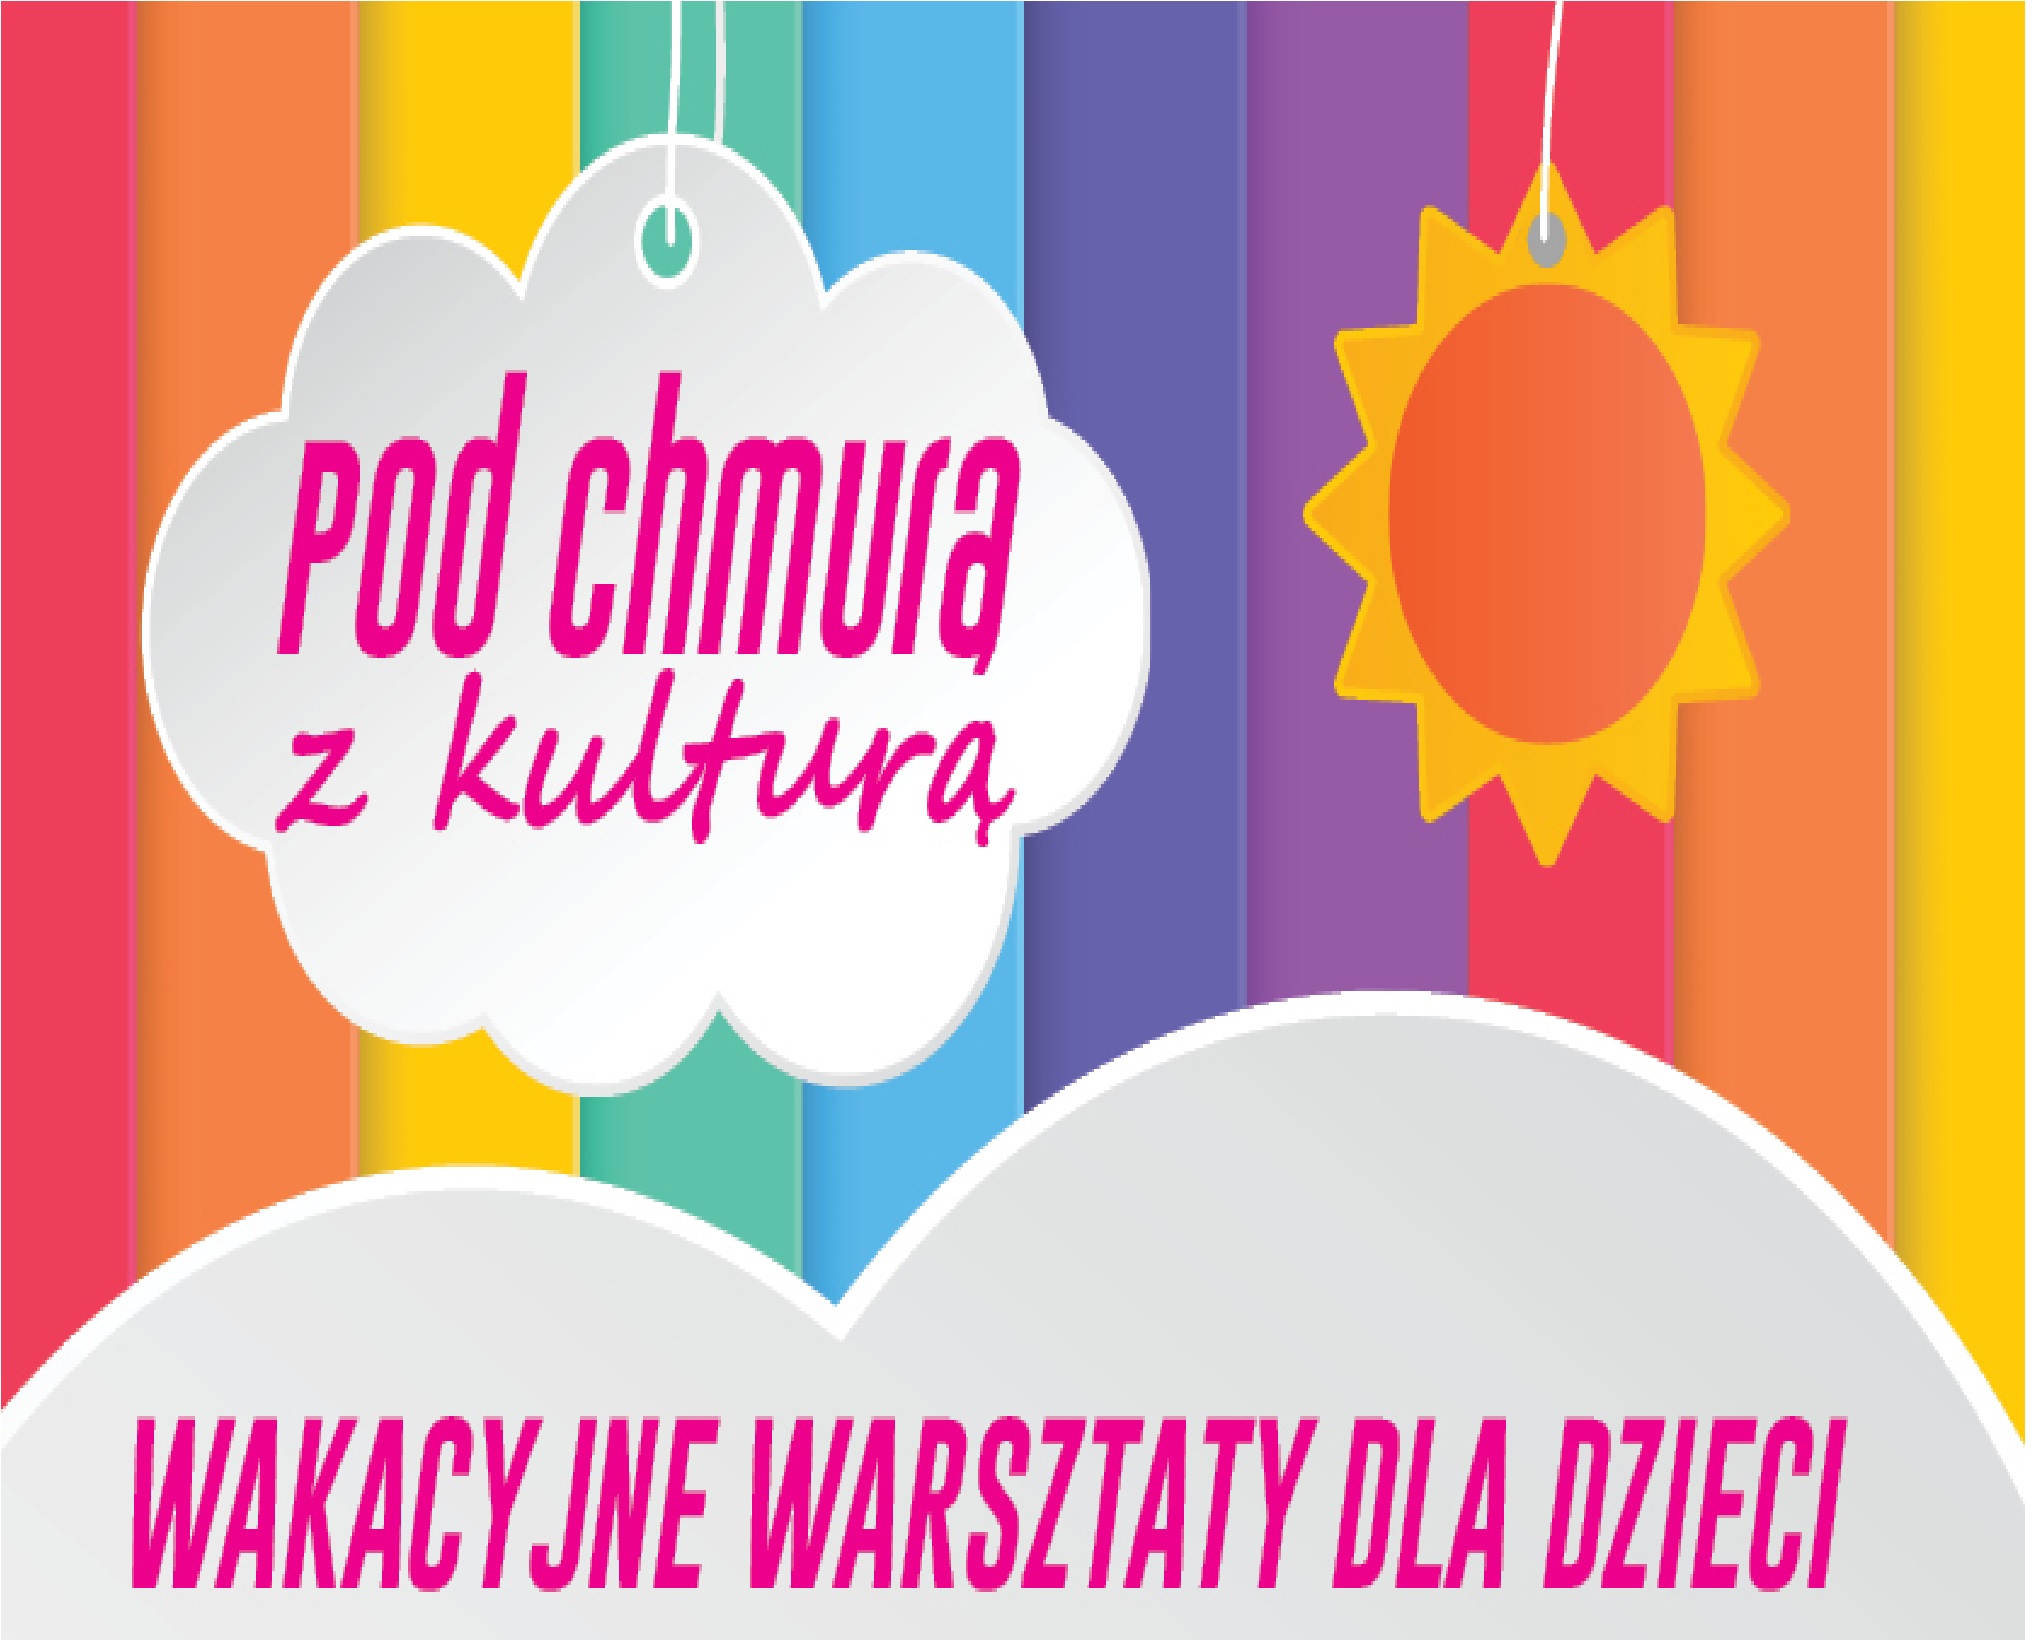 Pod chmurą z kulturą - wakacyjne warsztaty dla dzieci - Pawłowice 2022